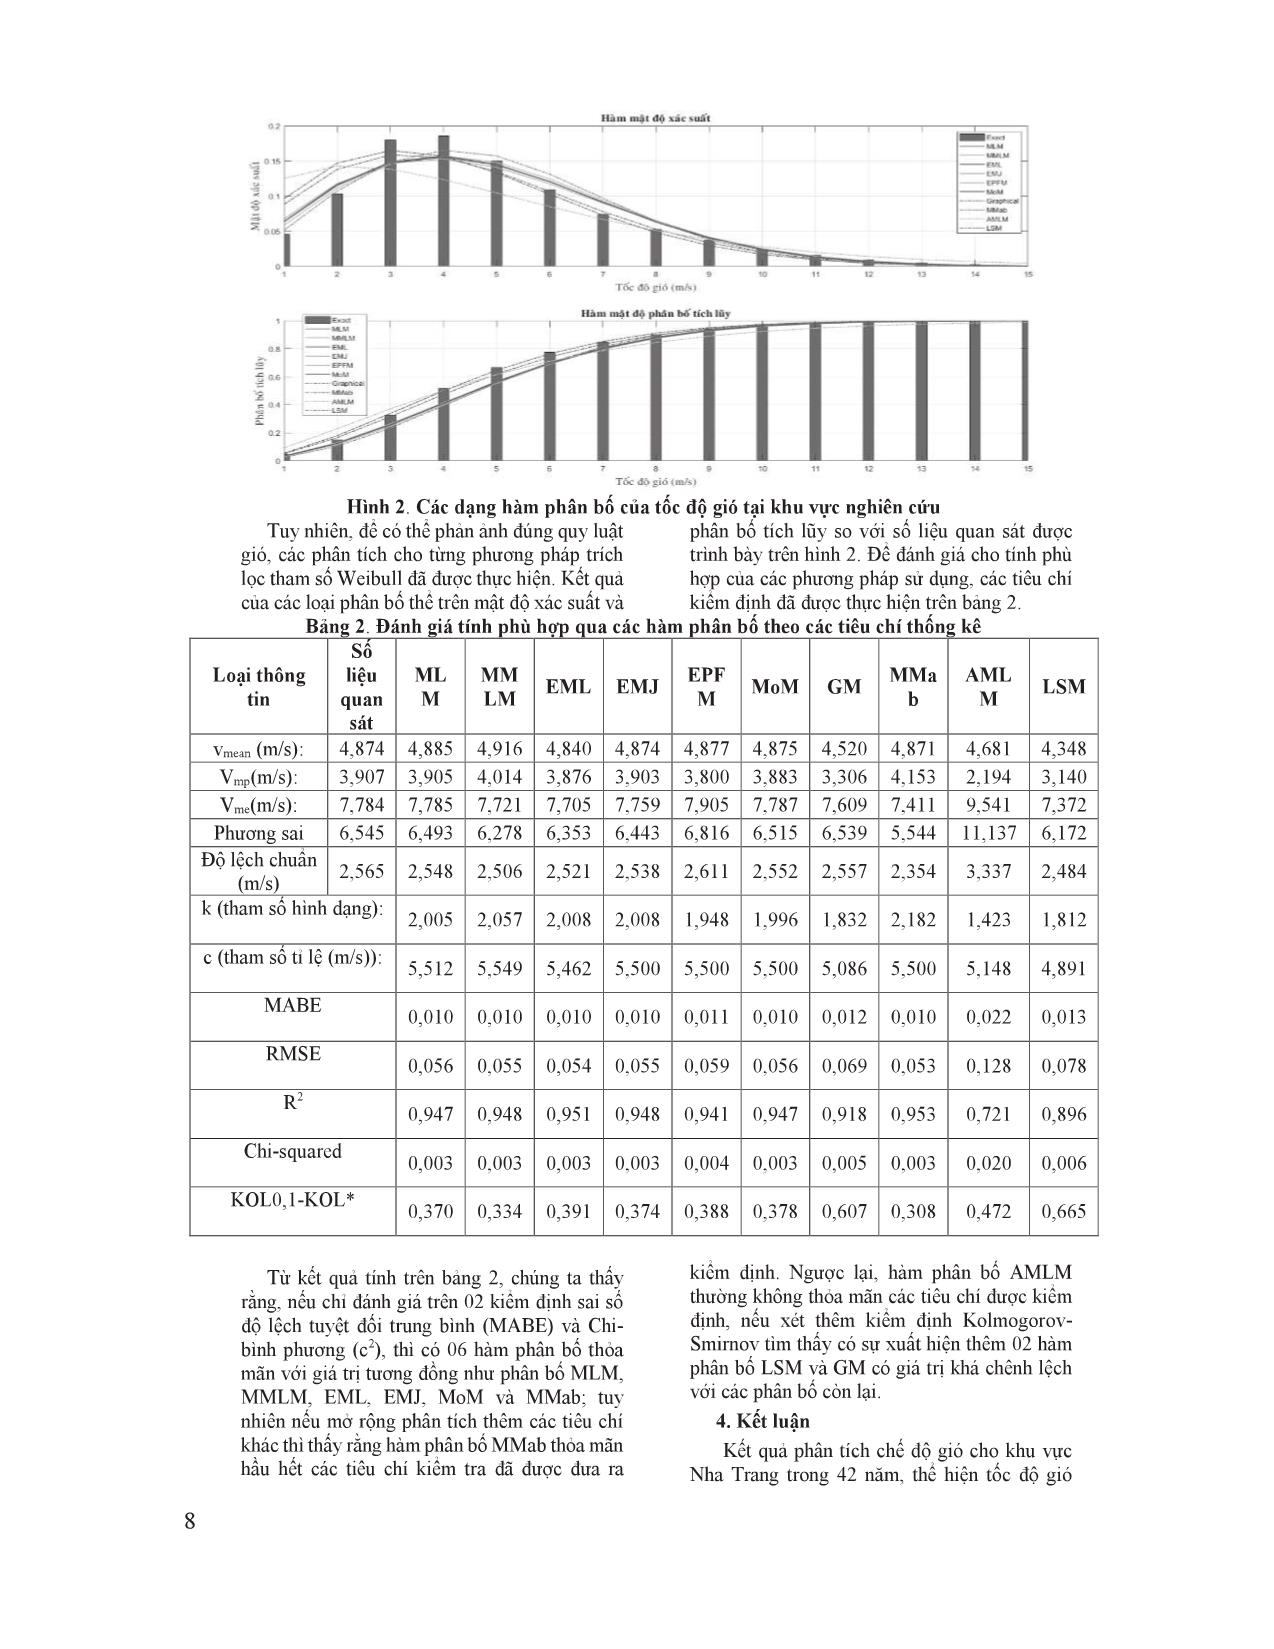 Ước lượng các tham số phân bố Weibull cho nghiên cứu chế độ gió phía Nam vịnh Nha Trang trang 6